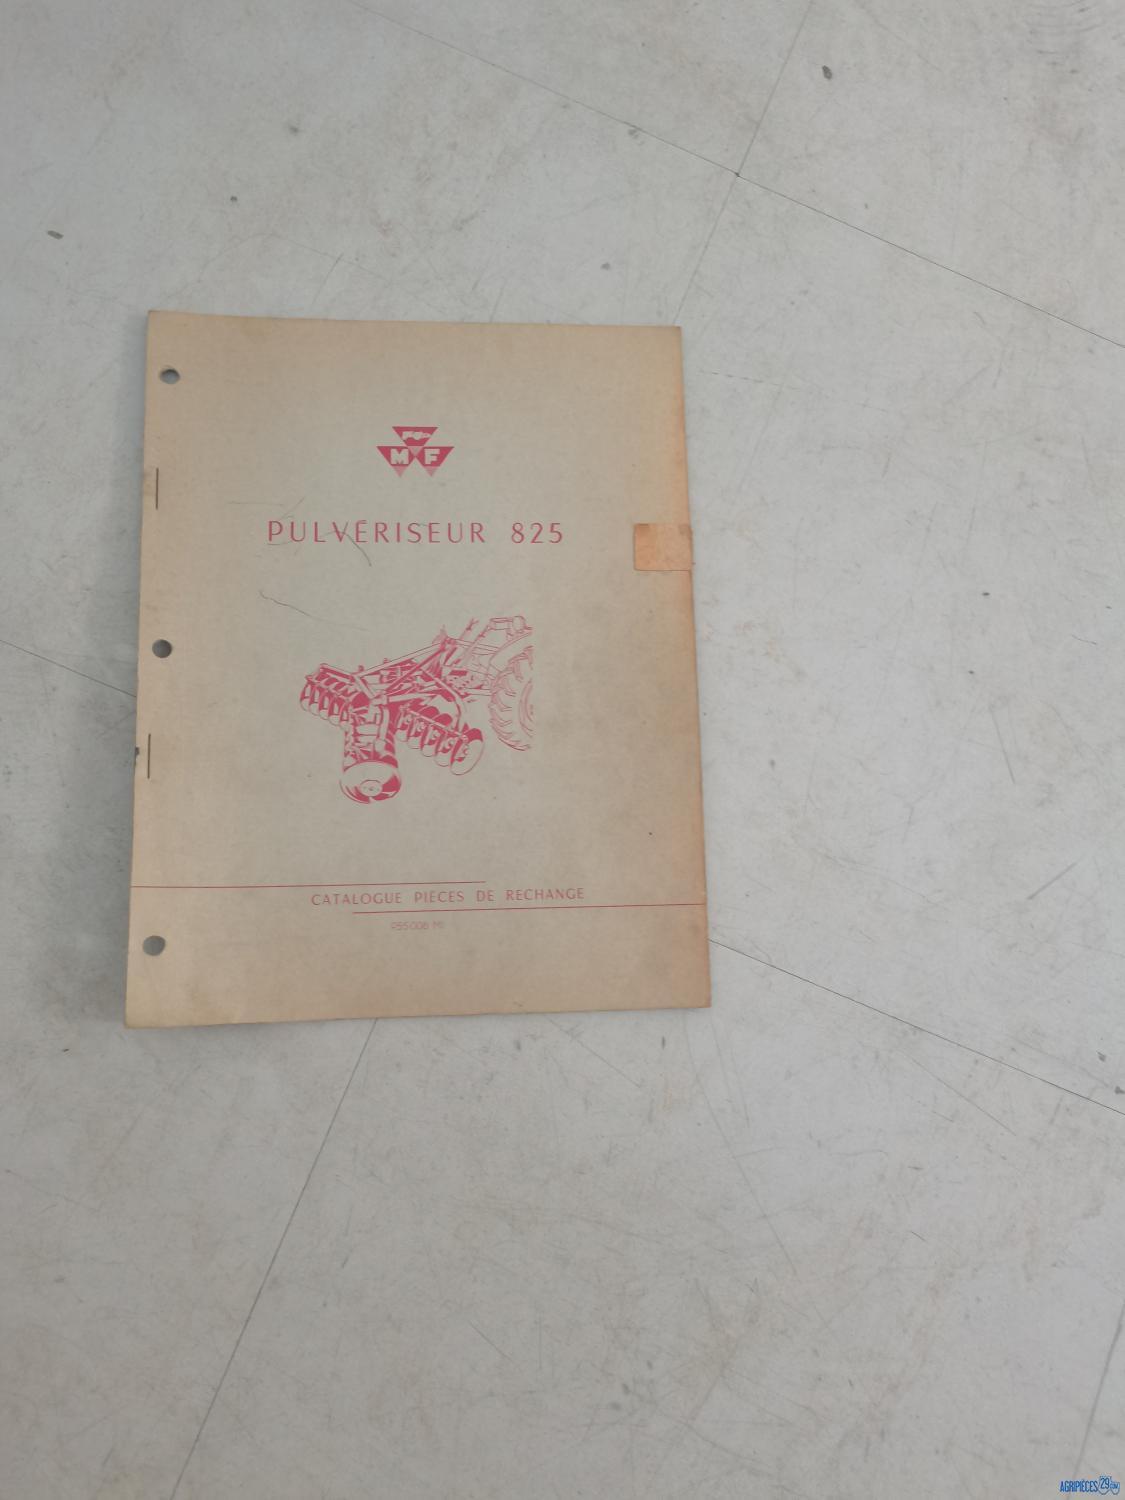 Catalogue de pièces détachées pour pulvérisateur 825